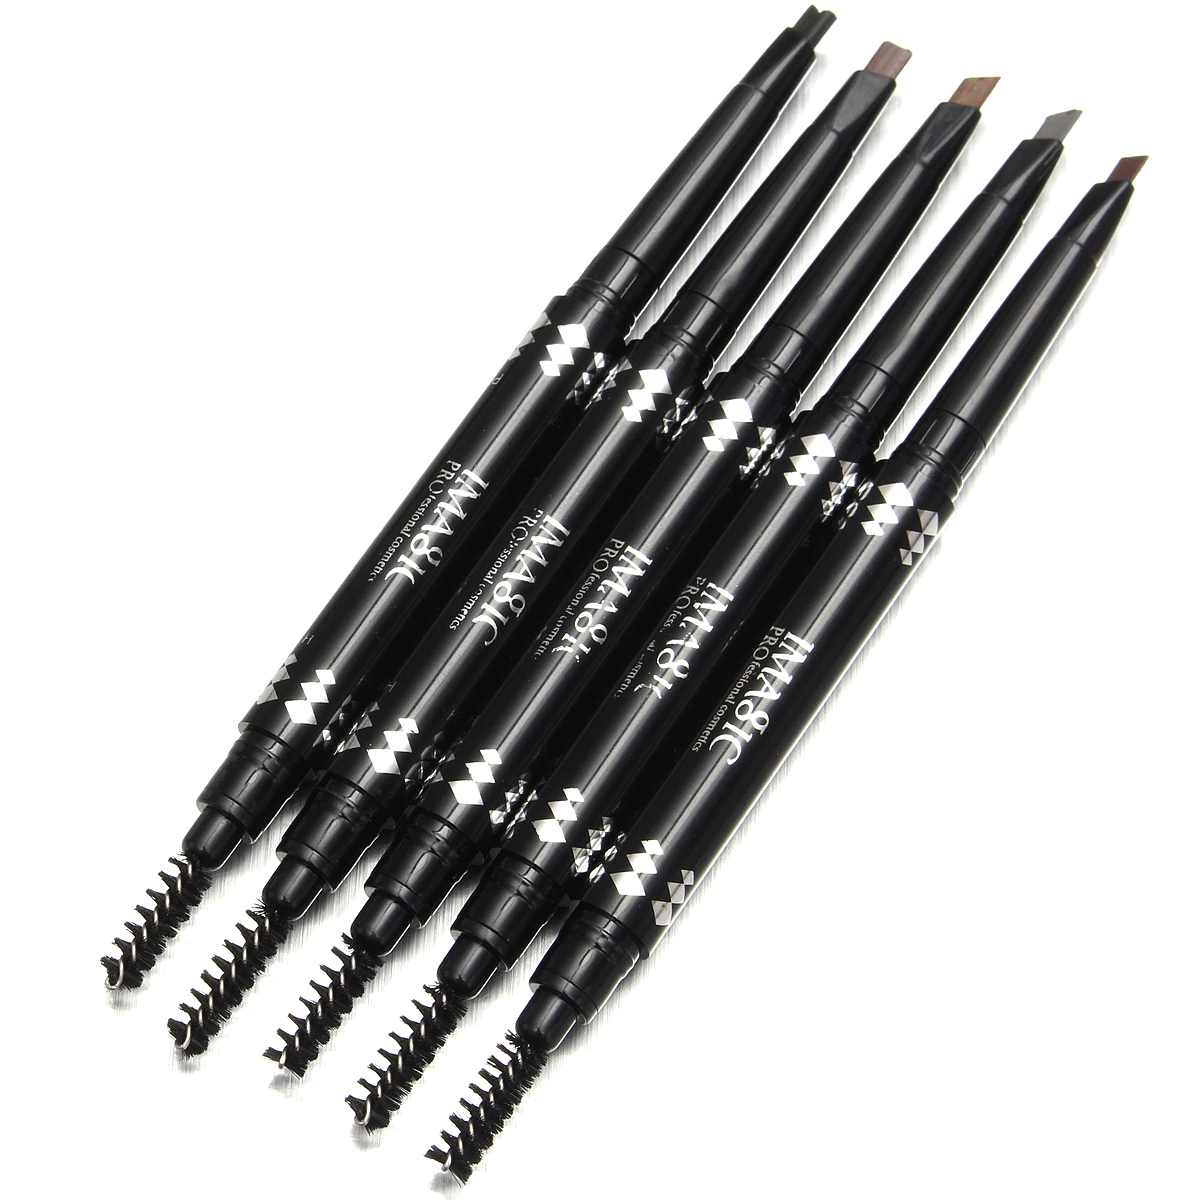 5 Colors 2 In 1 Waterproof Eyebrow Pencil Pen with Brush Eyeliner Makeup Tool